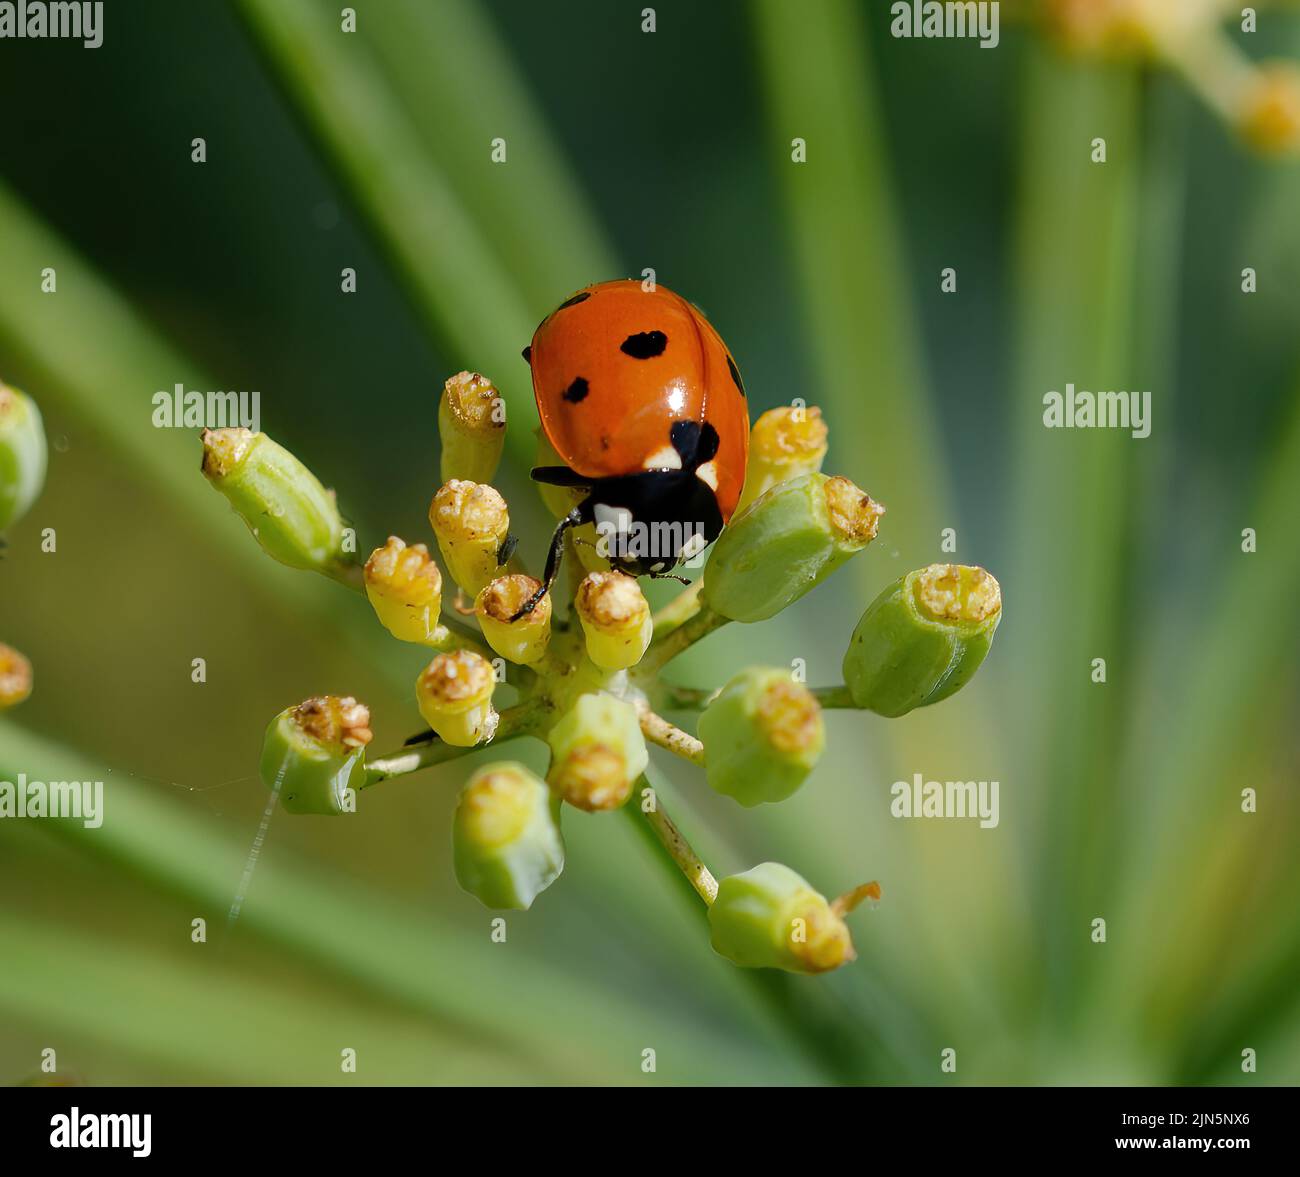 Ladybird on fennel Stock Photo